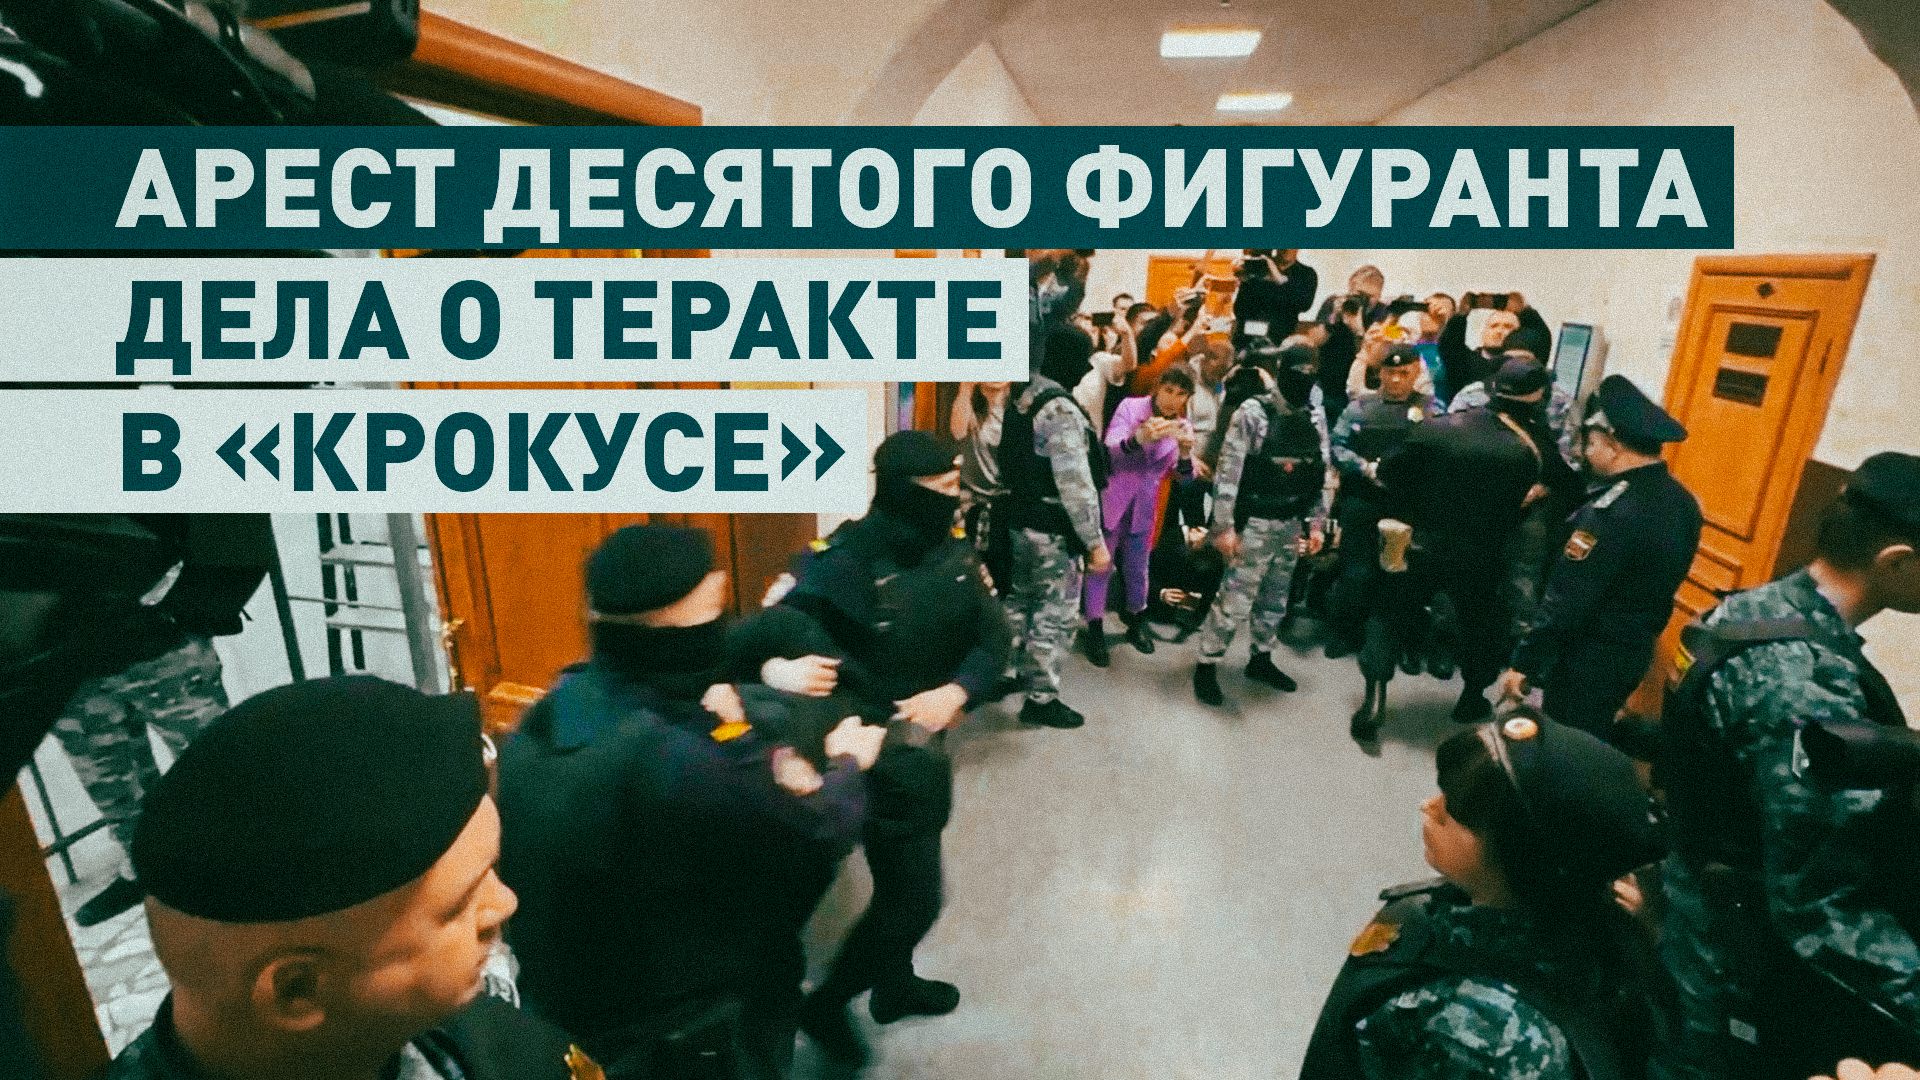 Десятого фигуранта дела о теракте в «Крокусе» арестовали в Москве